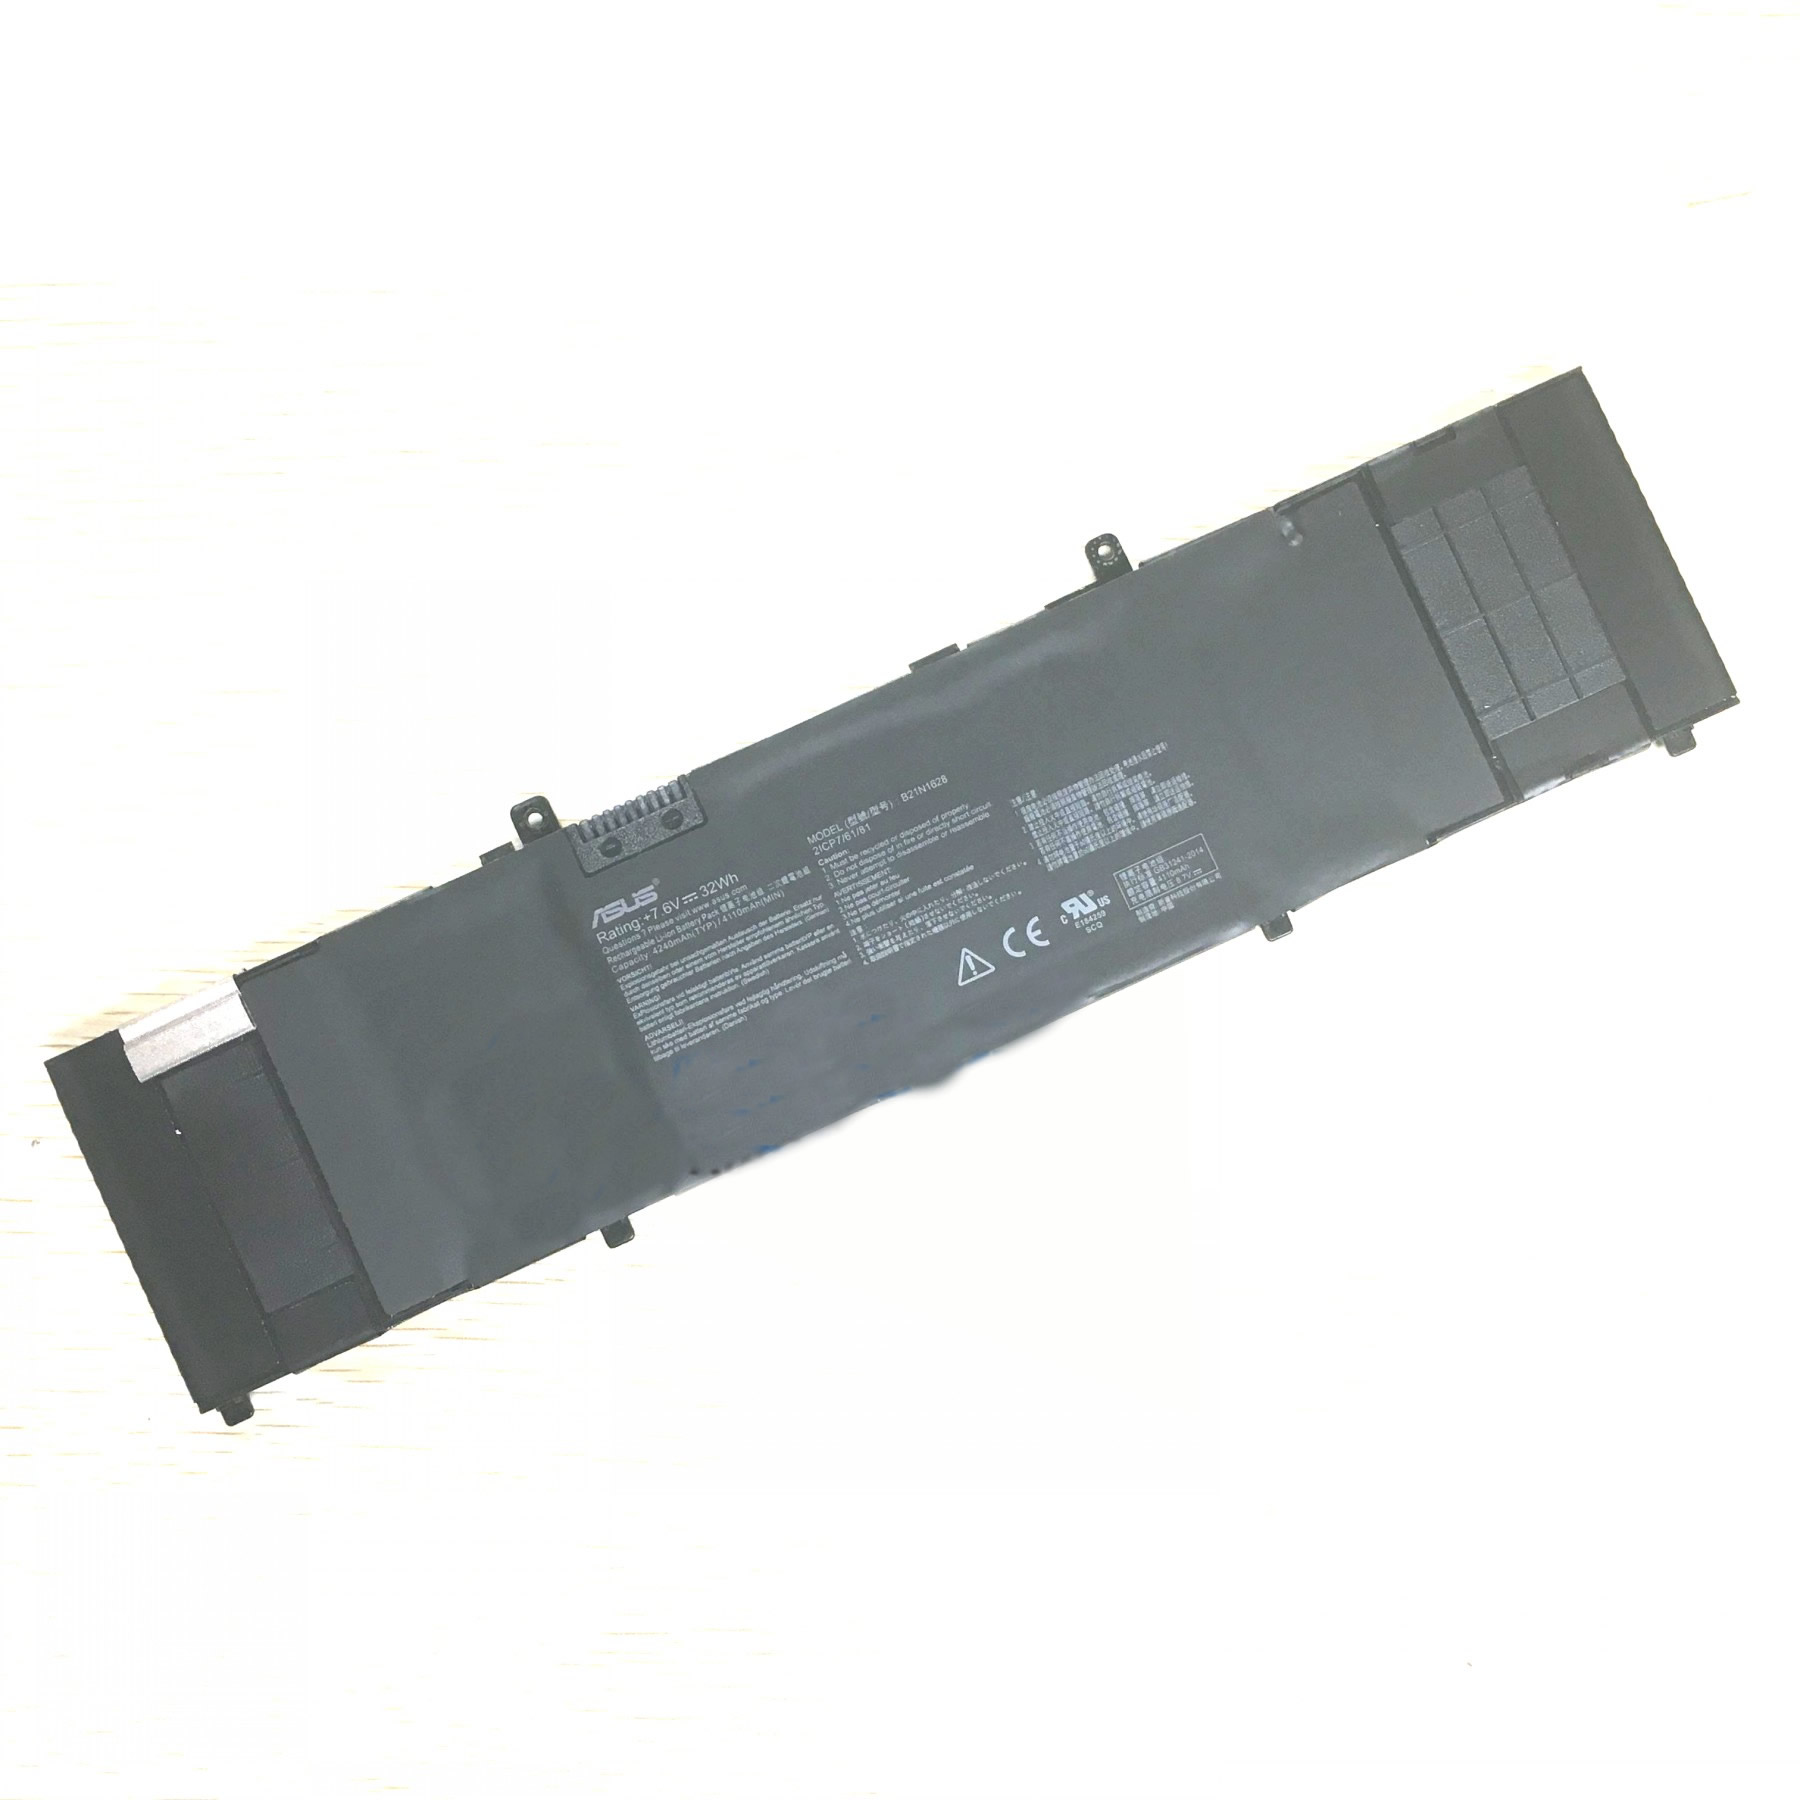 Batterie originale Asus B21N1628 0B200-02490000 2ICP7/61/81 7.6V 4210mAh, 32Wh pour ordinateur portable Asus U410UV, X410UV, X410UX-2A séries